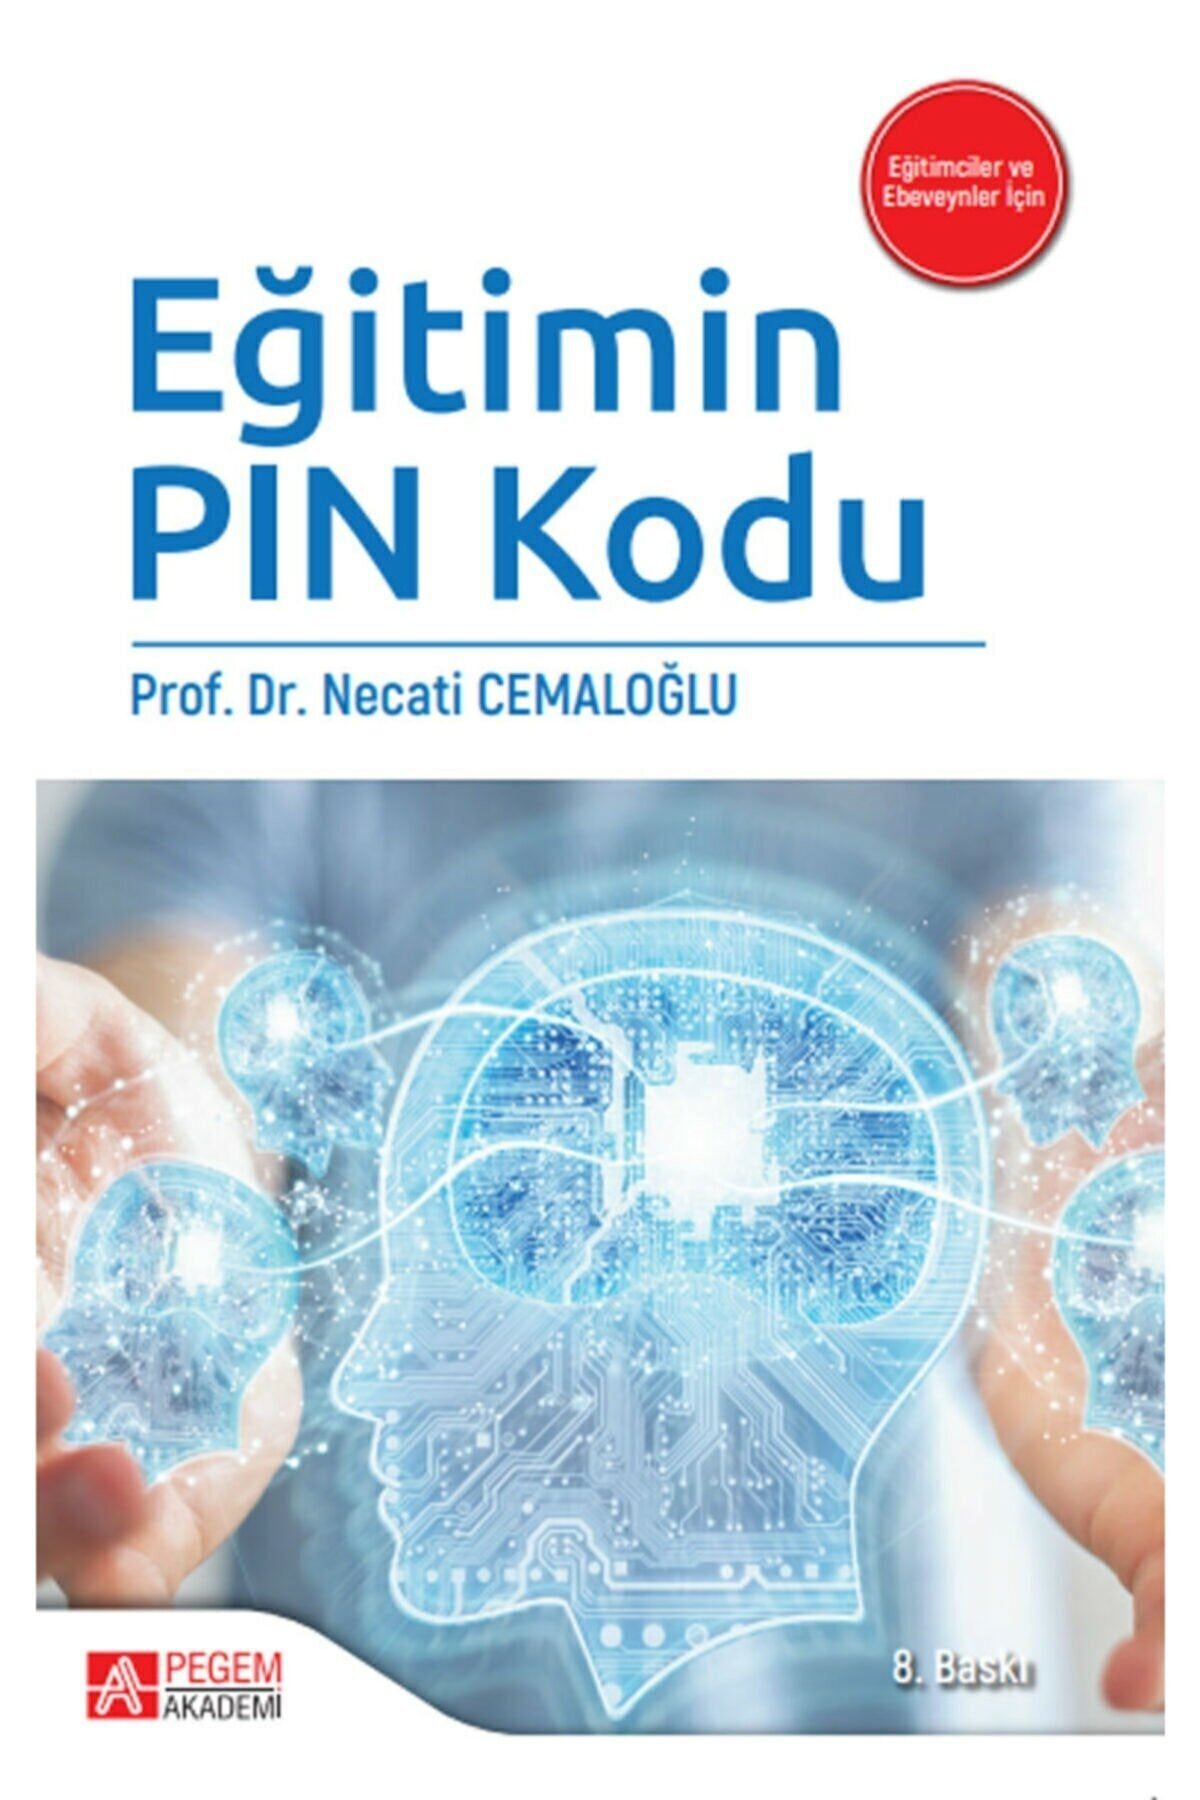 Pegem Akademi Yayıncılık Eğitimin Pin Kodu Prof. Dr. Necati Cemlaoğlu